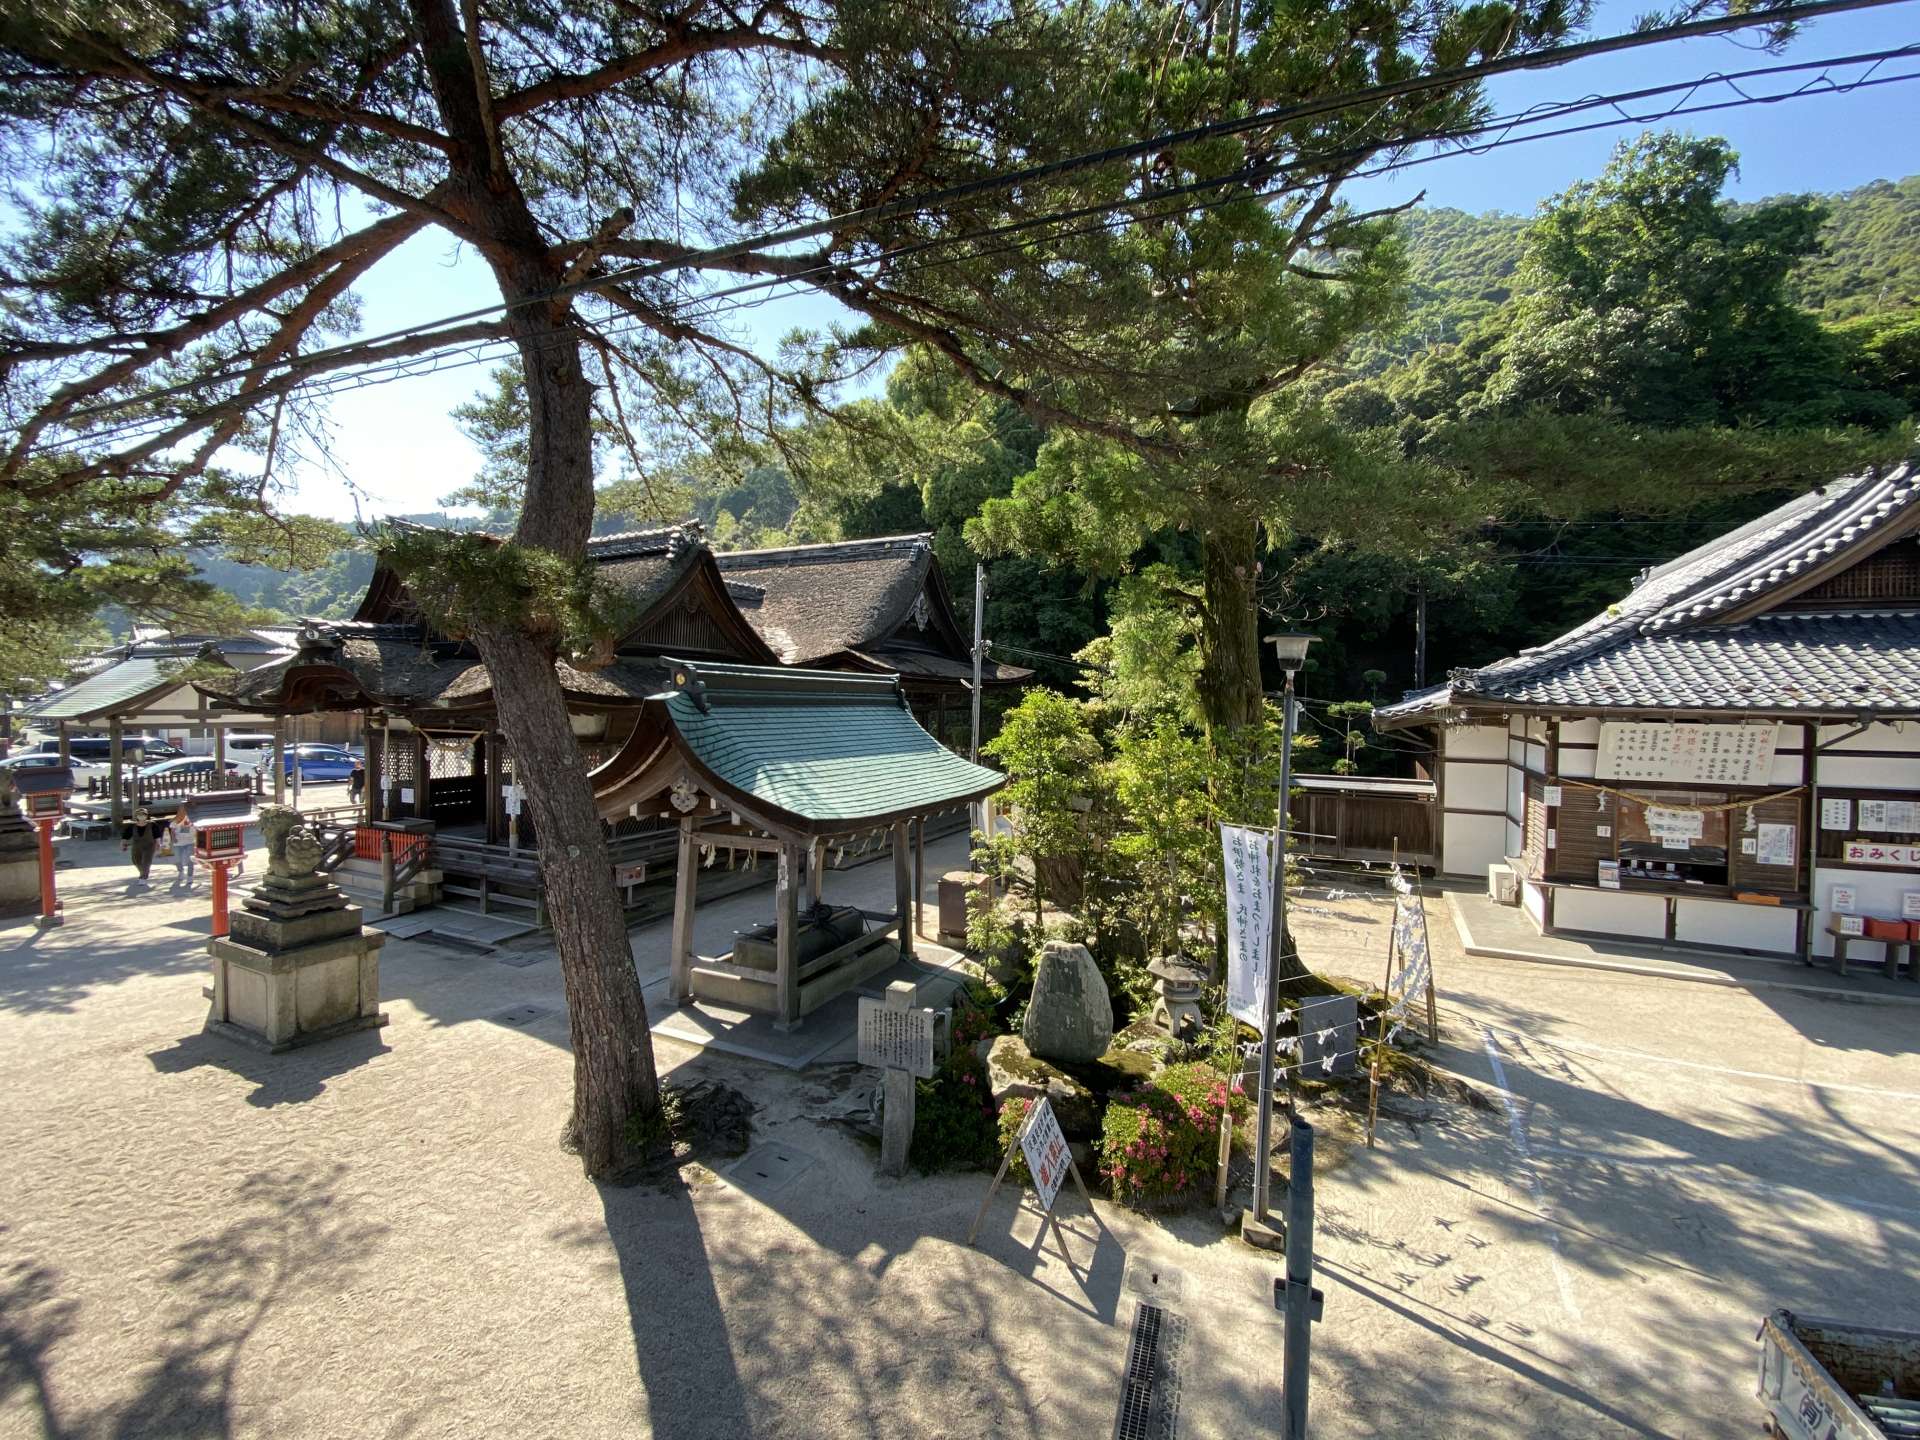 創建は約2000年前で、近江最古といわれる歴史を誇る白鬚神社。境内には著名な歌人の歌碑も多数。